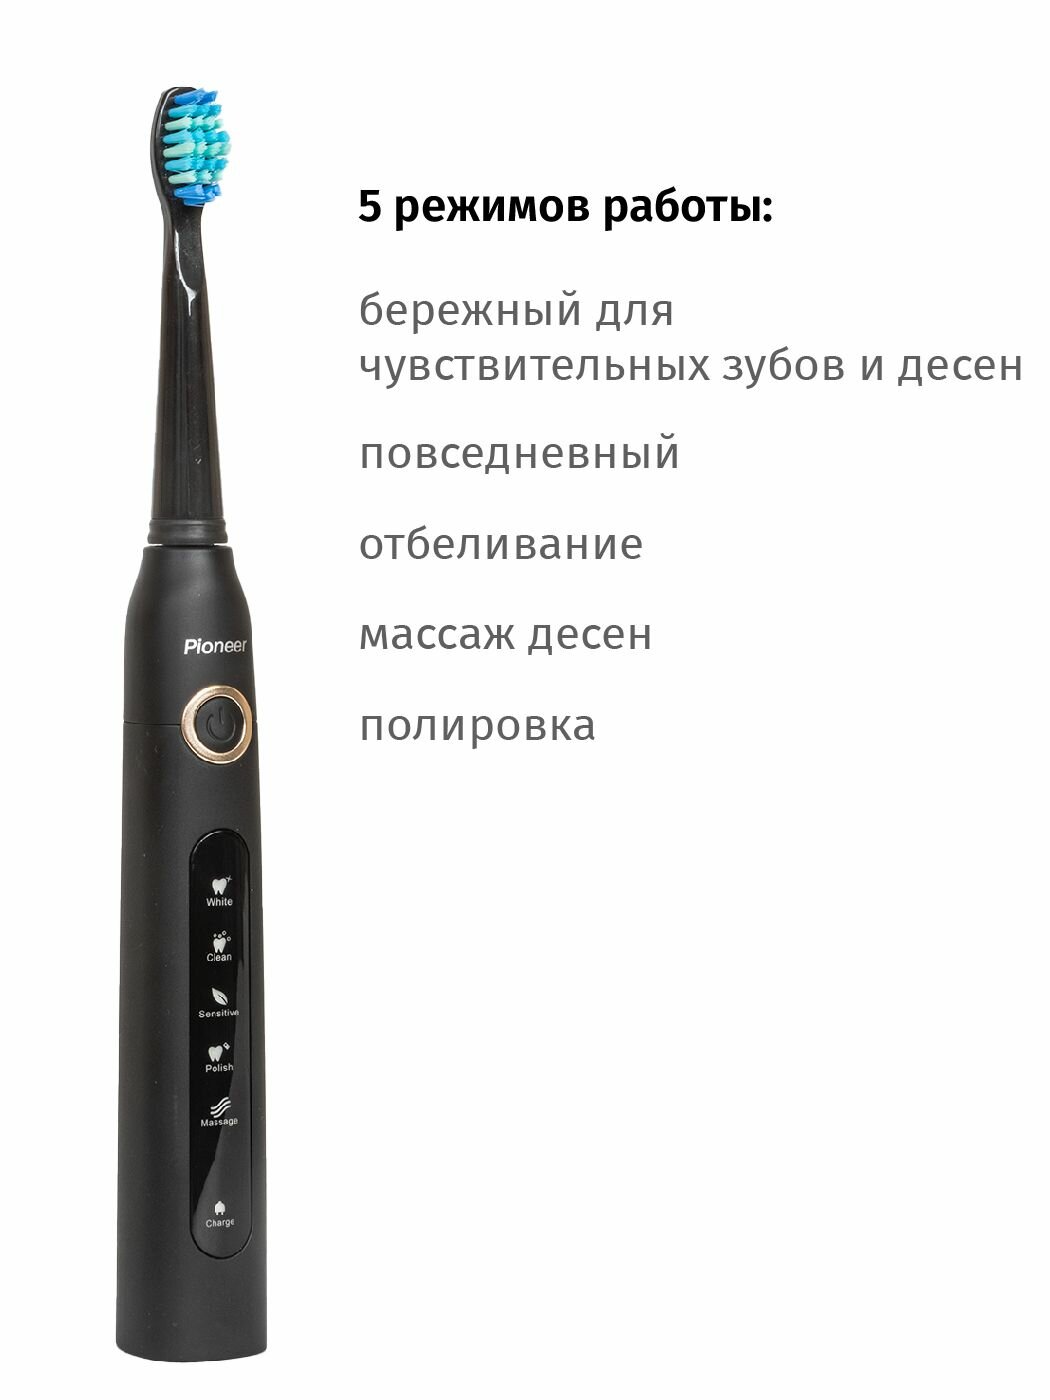 Электрическая зубная щетка Pioneer с водонепроницаемым корпусом IPX7, 5 сменных насадок, USB кабель, 5 режимов - фотография № 2